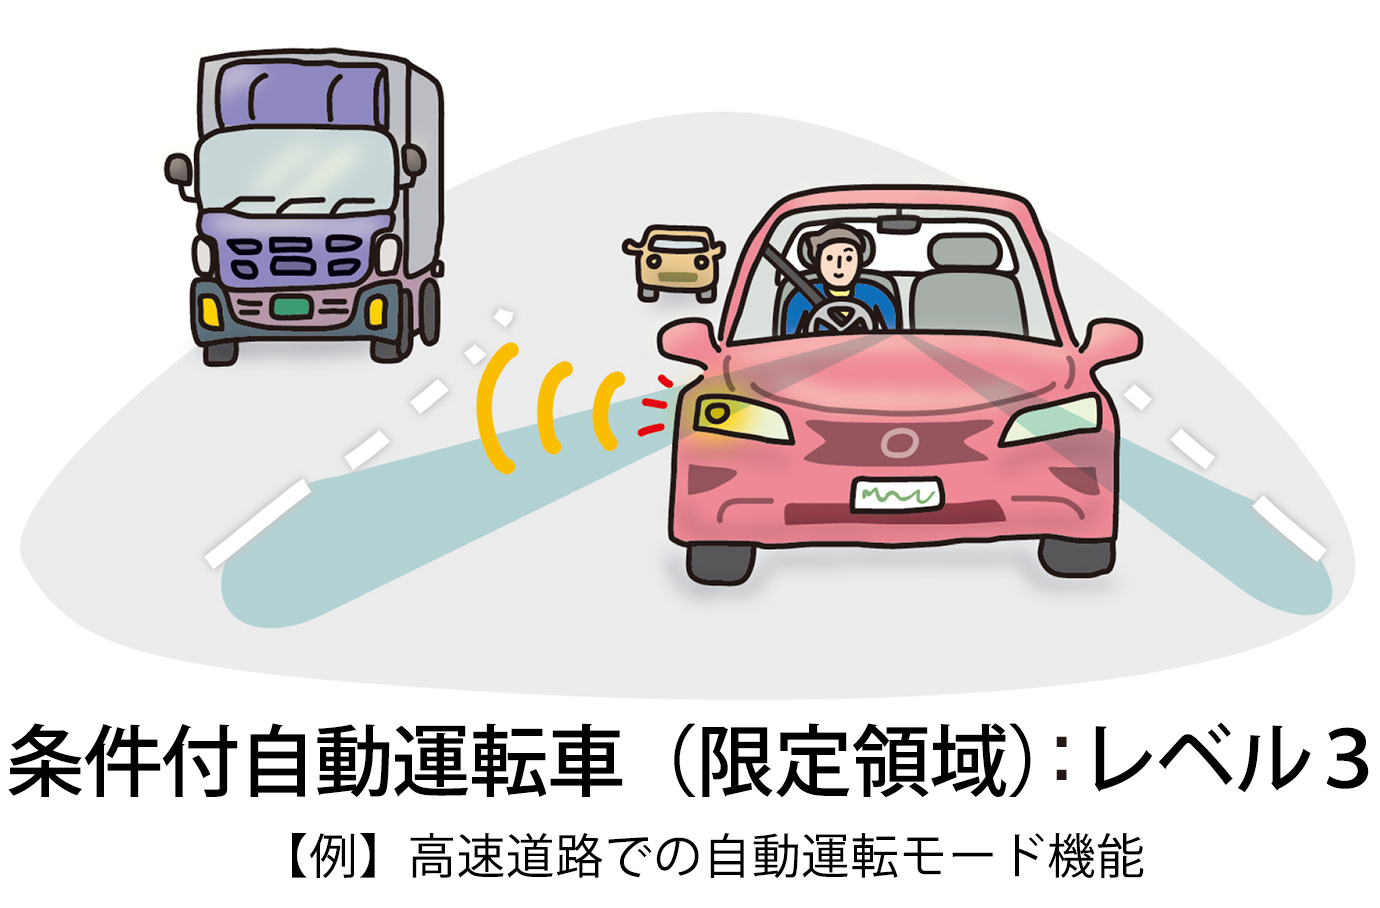 【例】高速道路での自動運転モード機能（条件付自動運転車（限定領域）：レベル3）